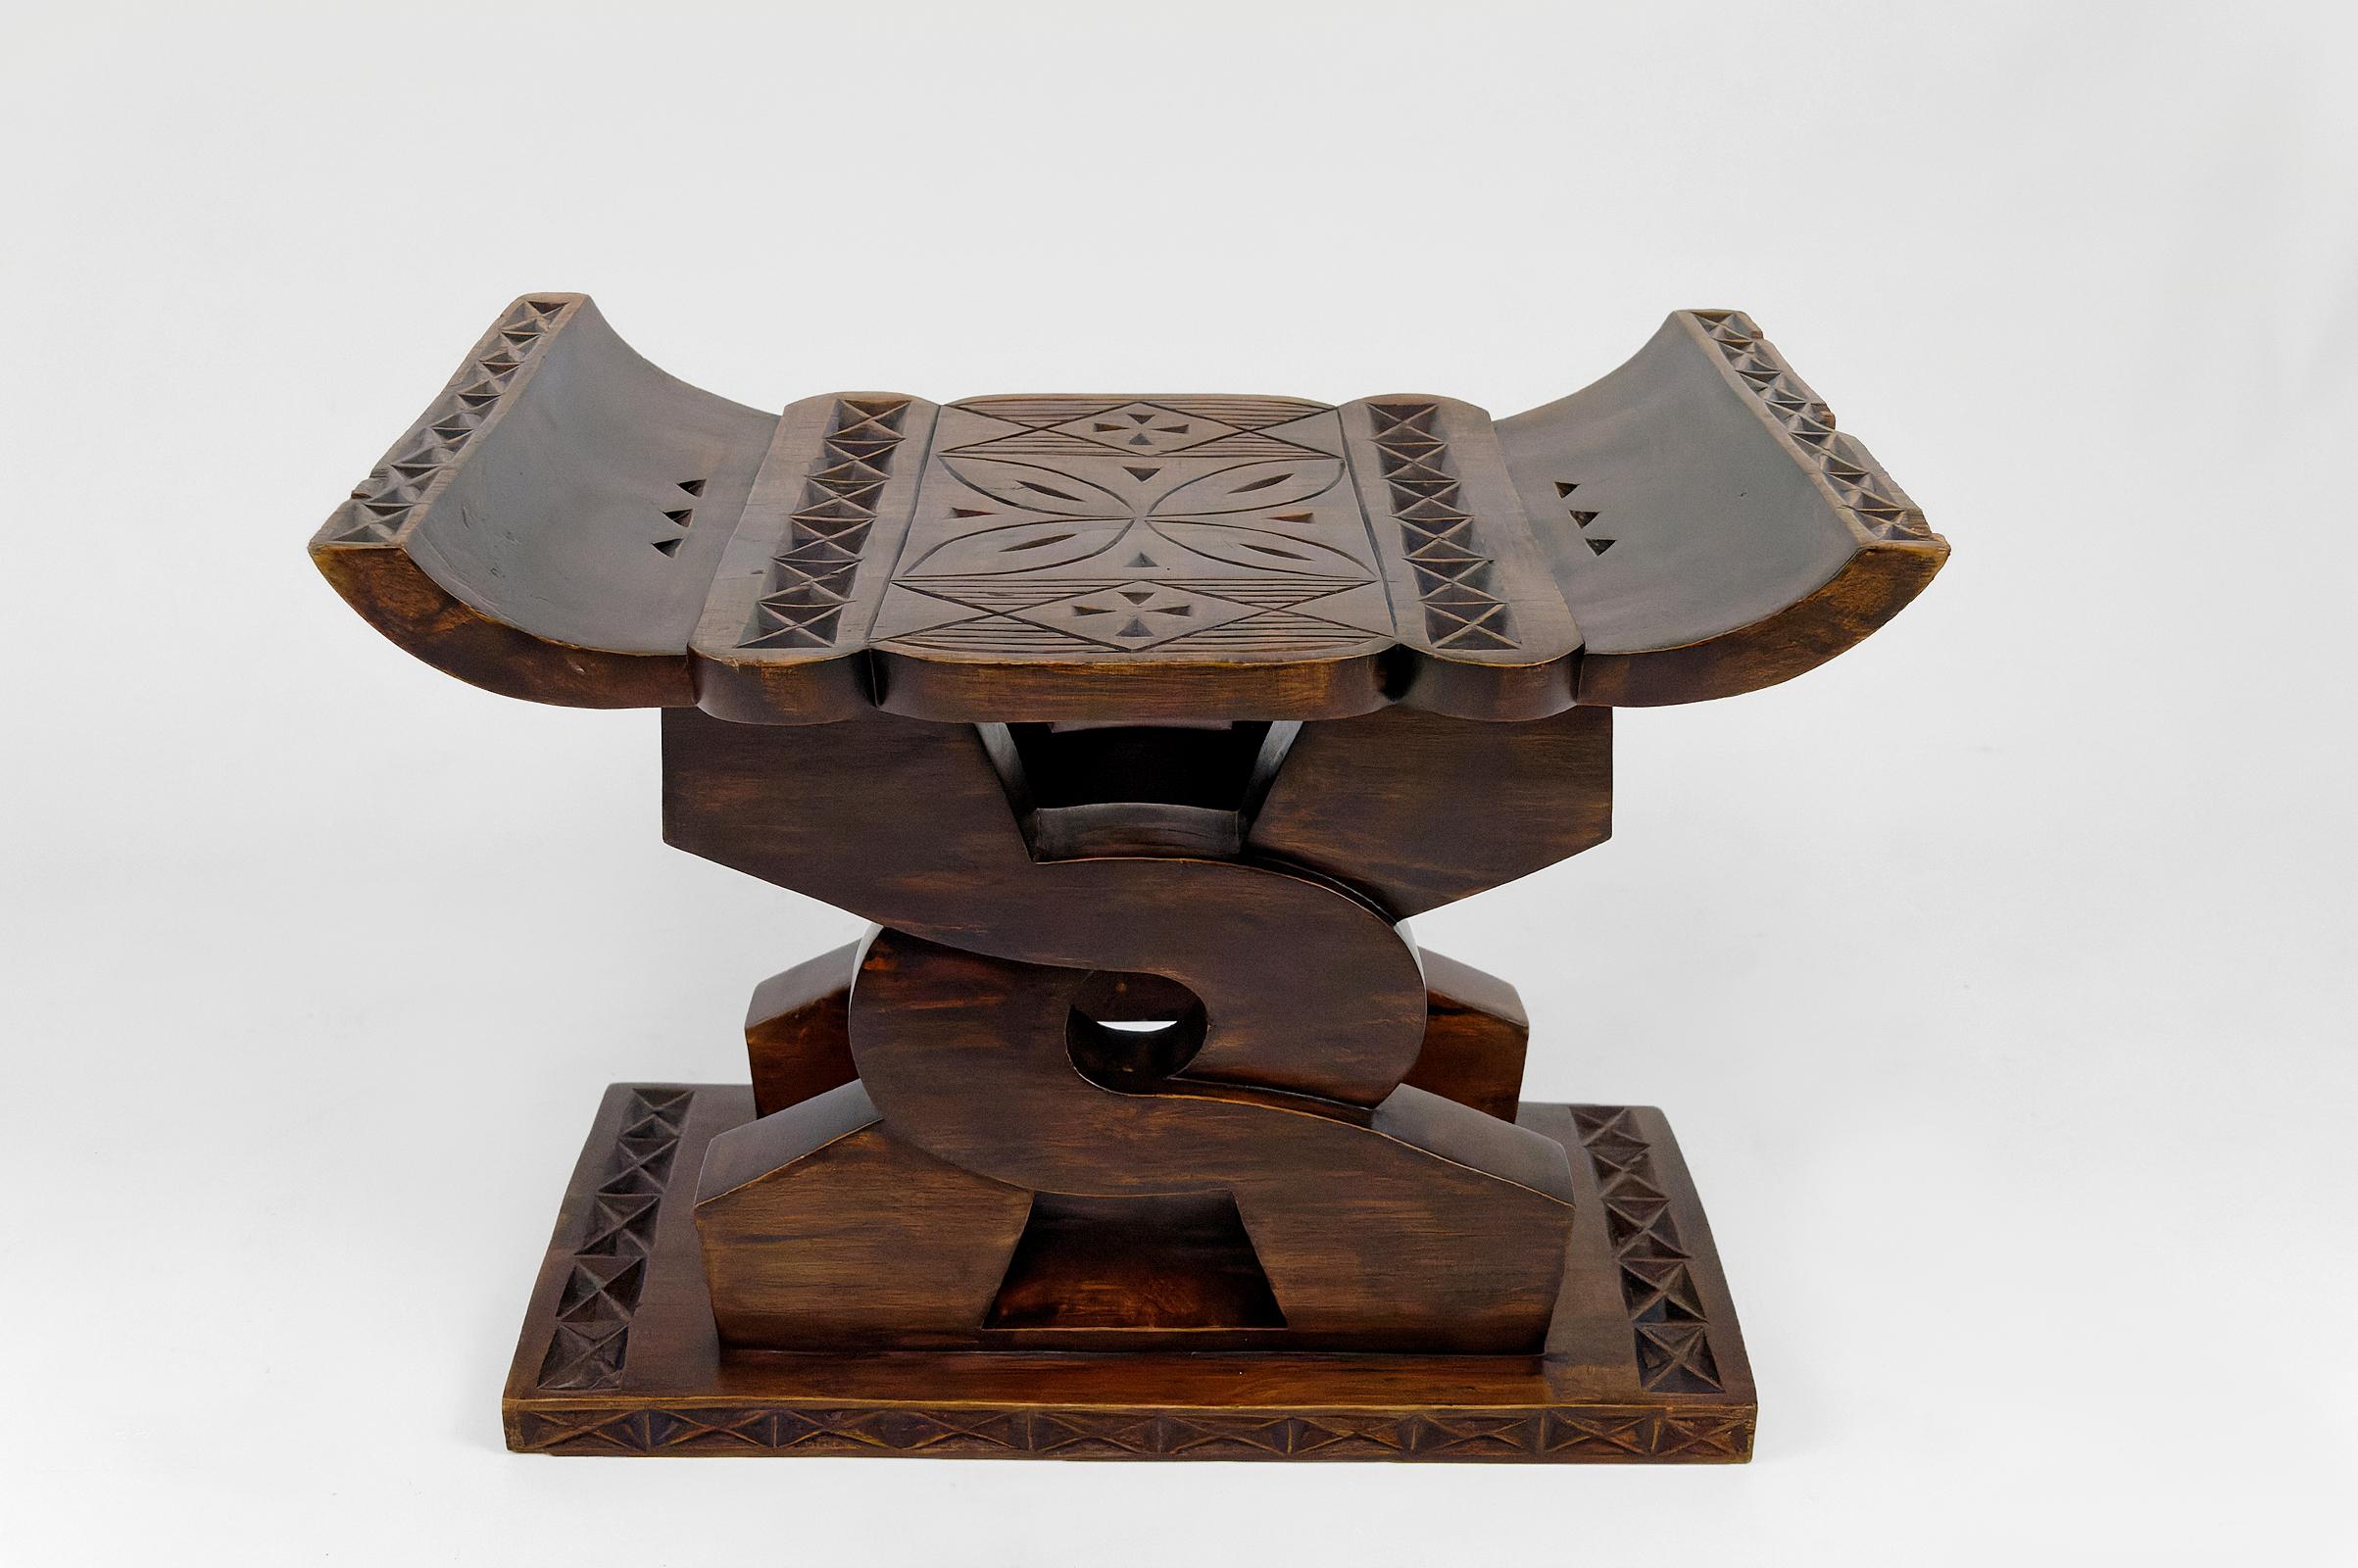 En bois de cèdre.

Tabouret africain en bois sculpté, avec un siège incurvé reposant sur deux supports en bois sculpté entrelacés et une fine base. La tradition ghanéenne explique que le symbole central sculpté dans ce tabouret en cèdre est un nœud